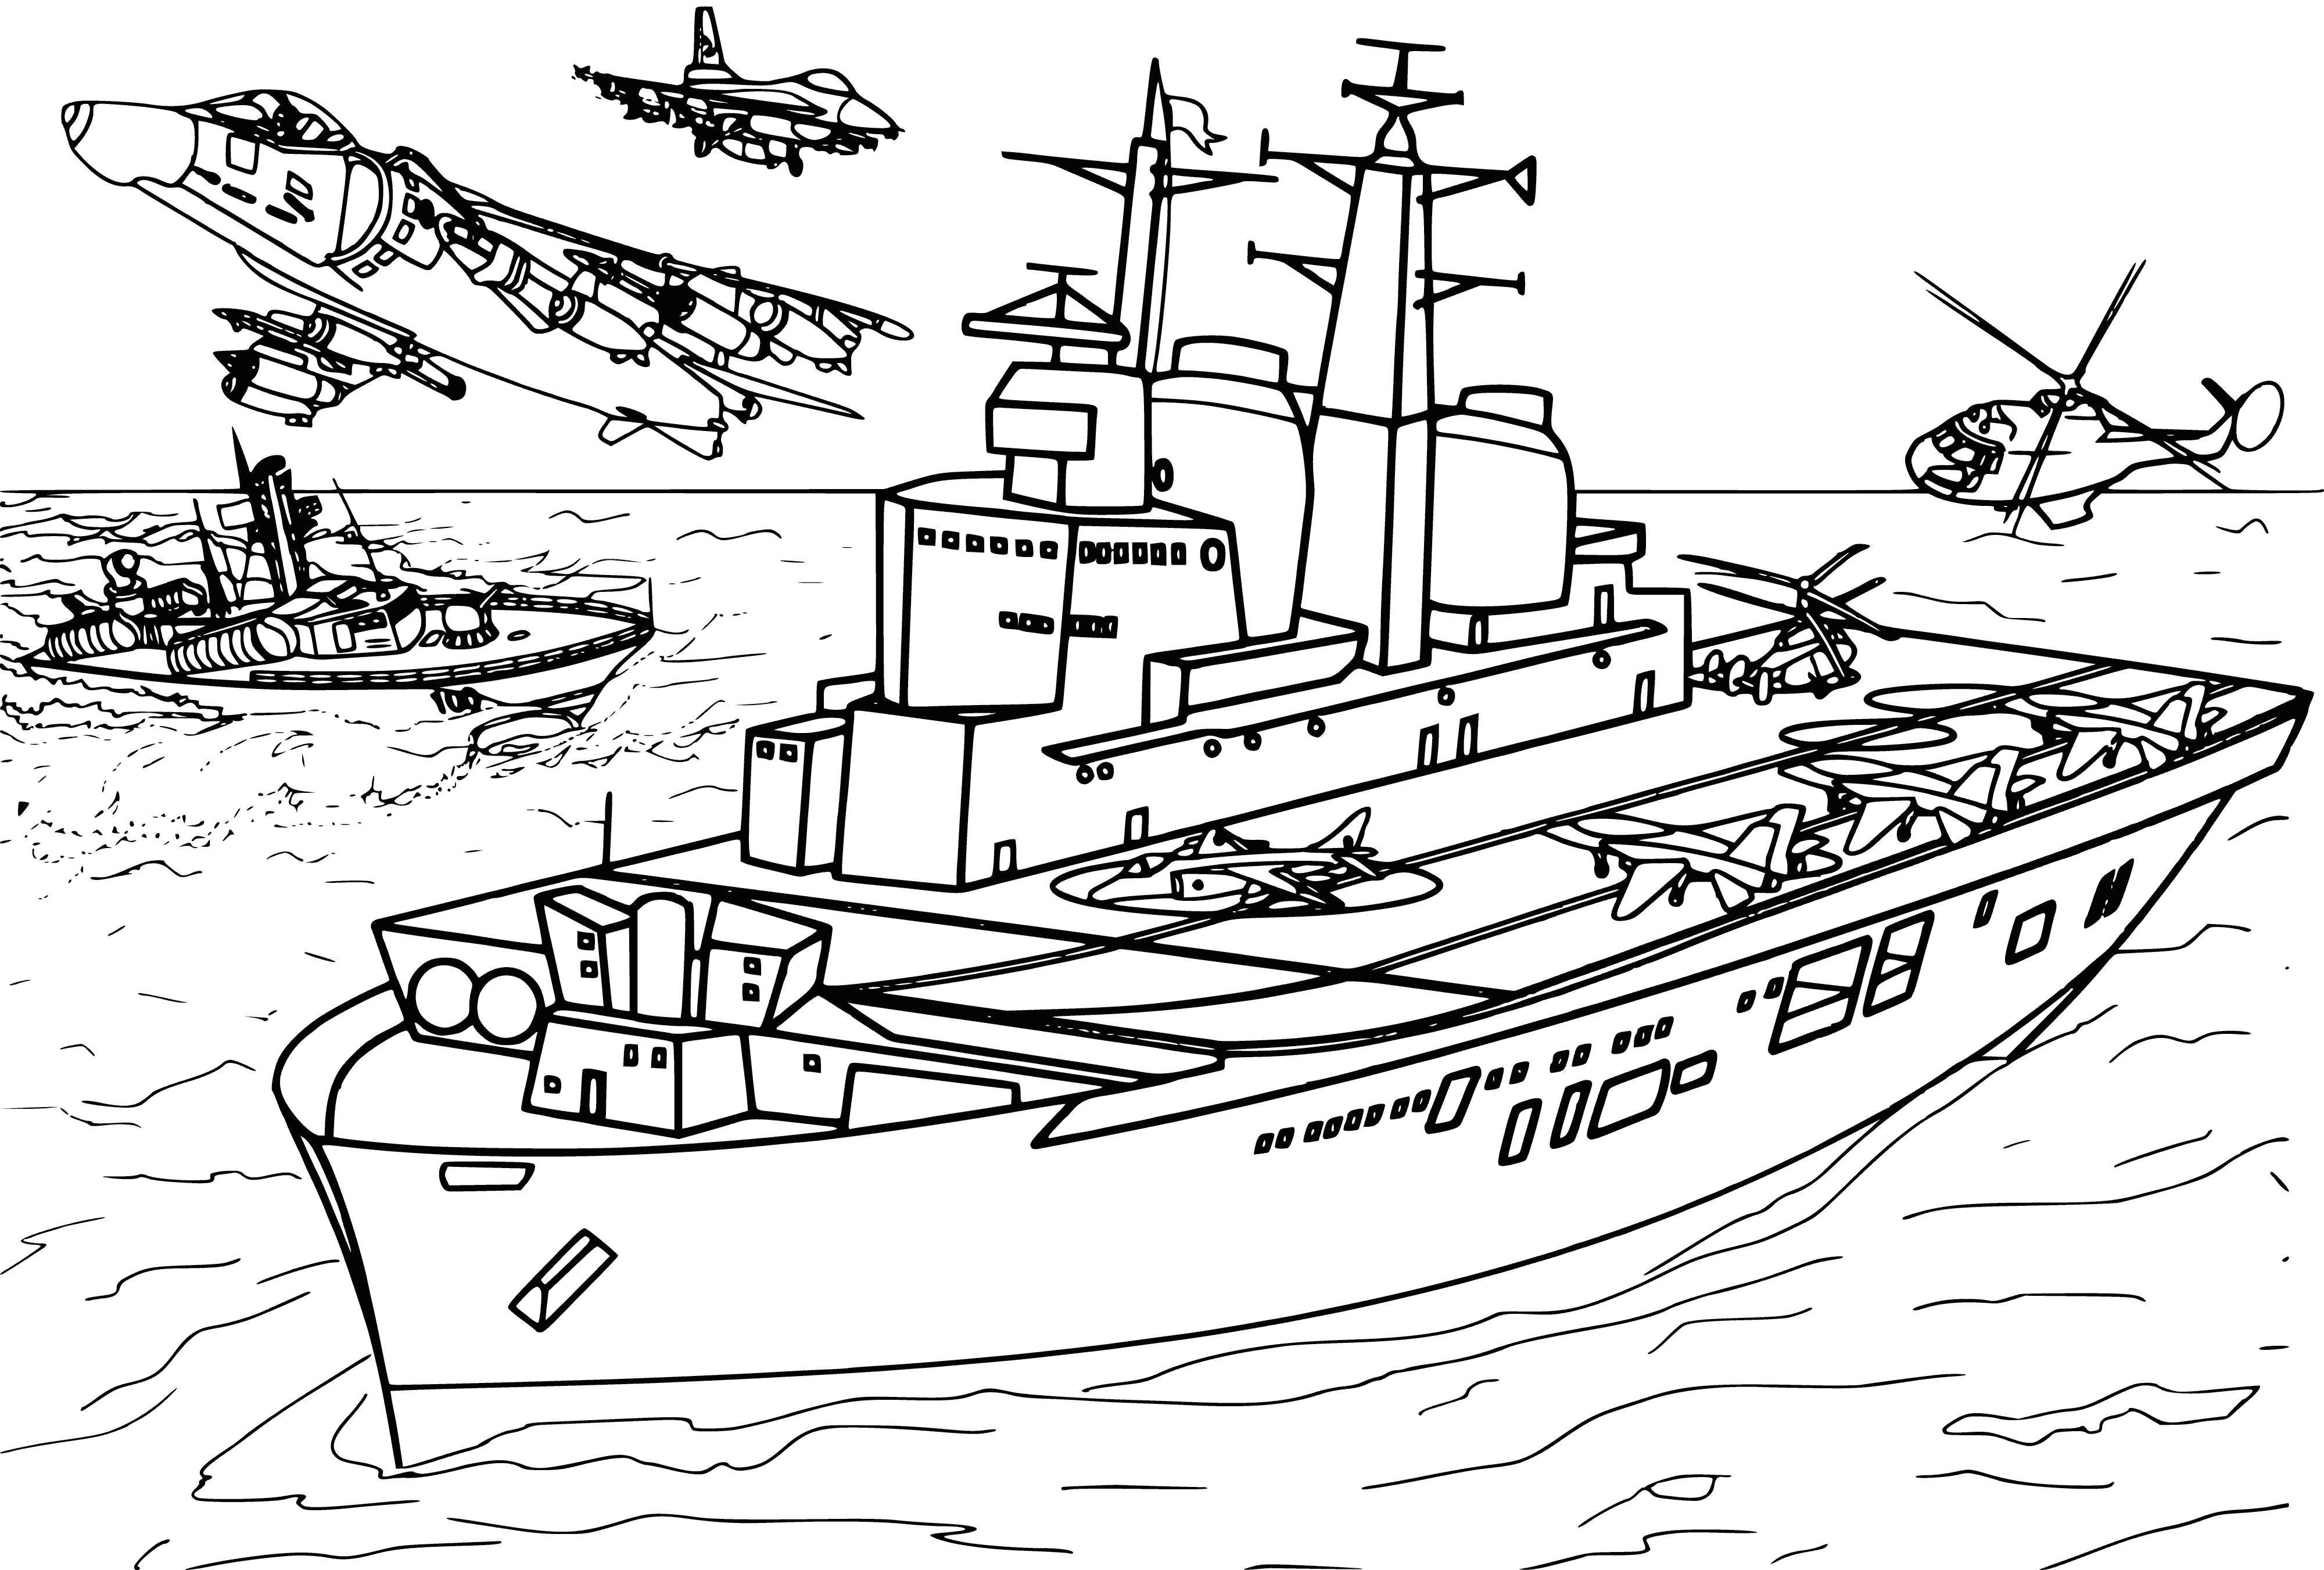 İngiliz uçak gemisi Invincible boyama sayfası